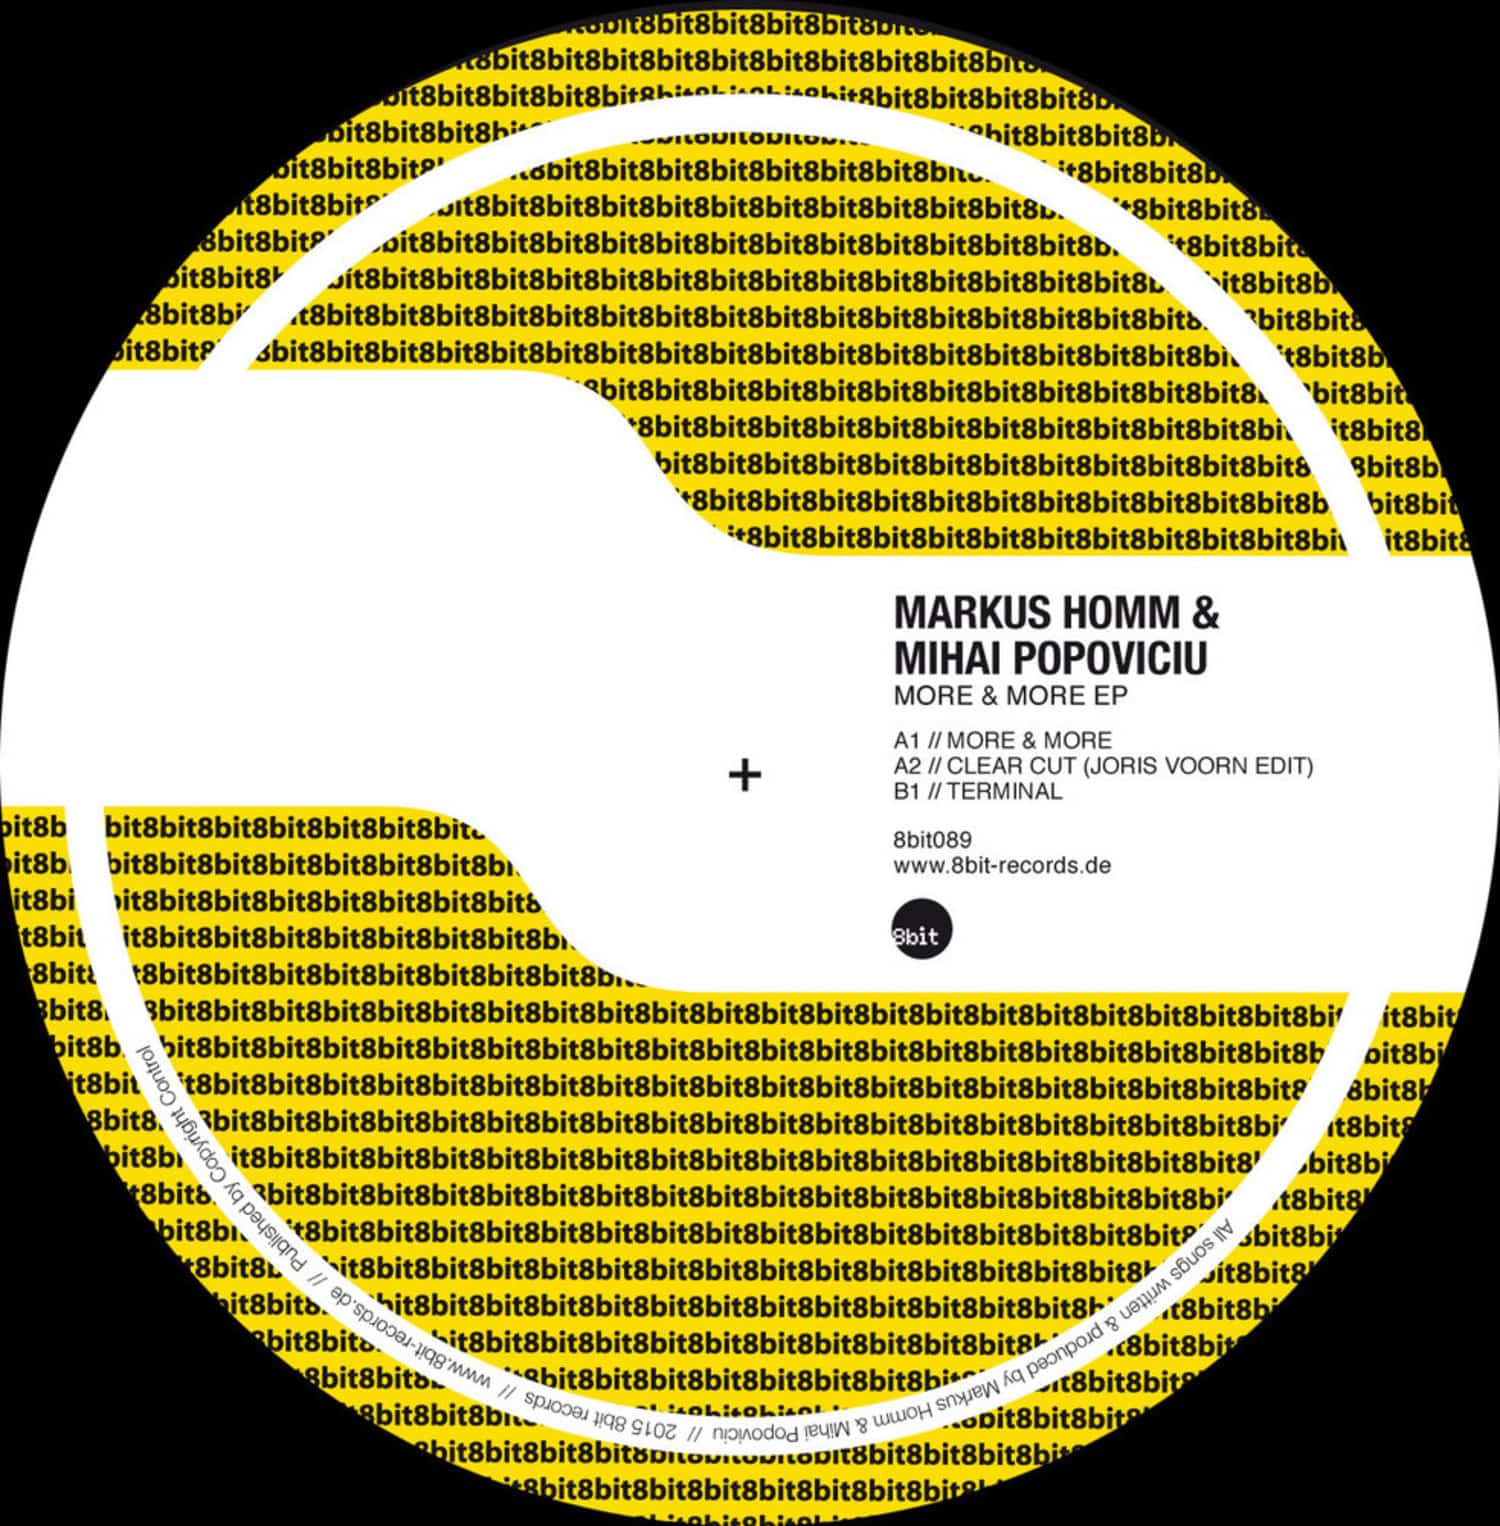 Markus Homm & Mihai Popoviciu - MORE & MORE EP 